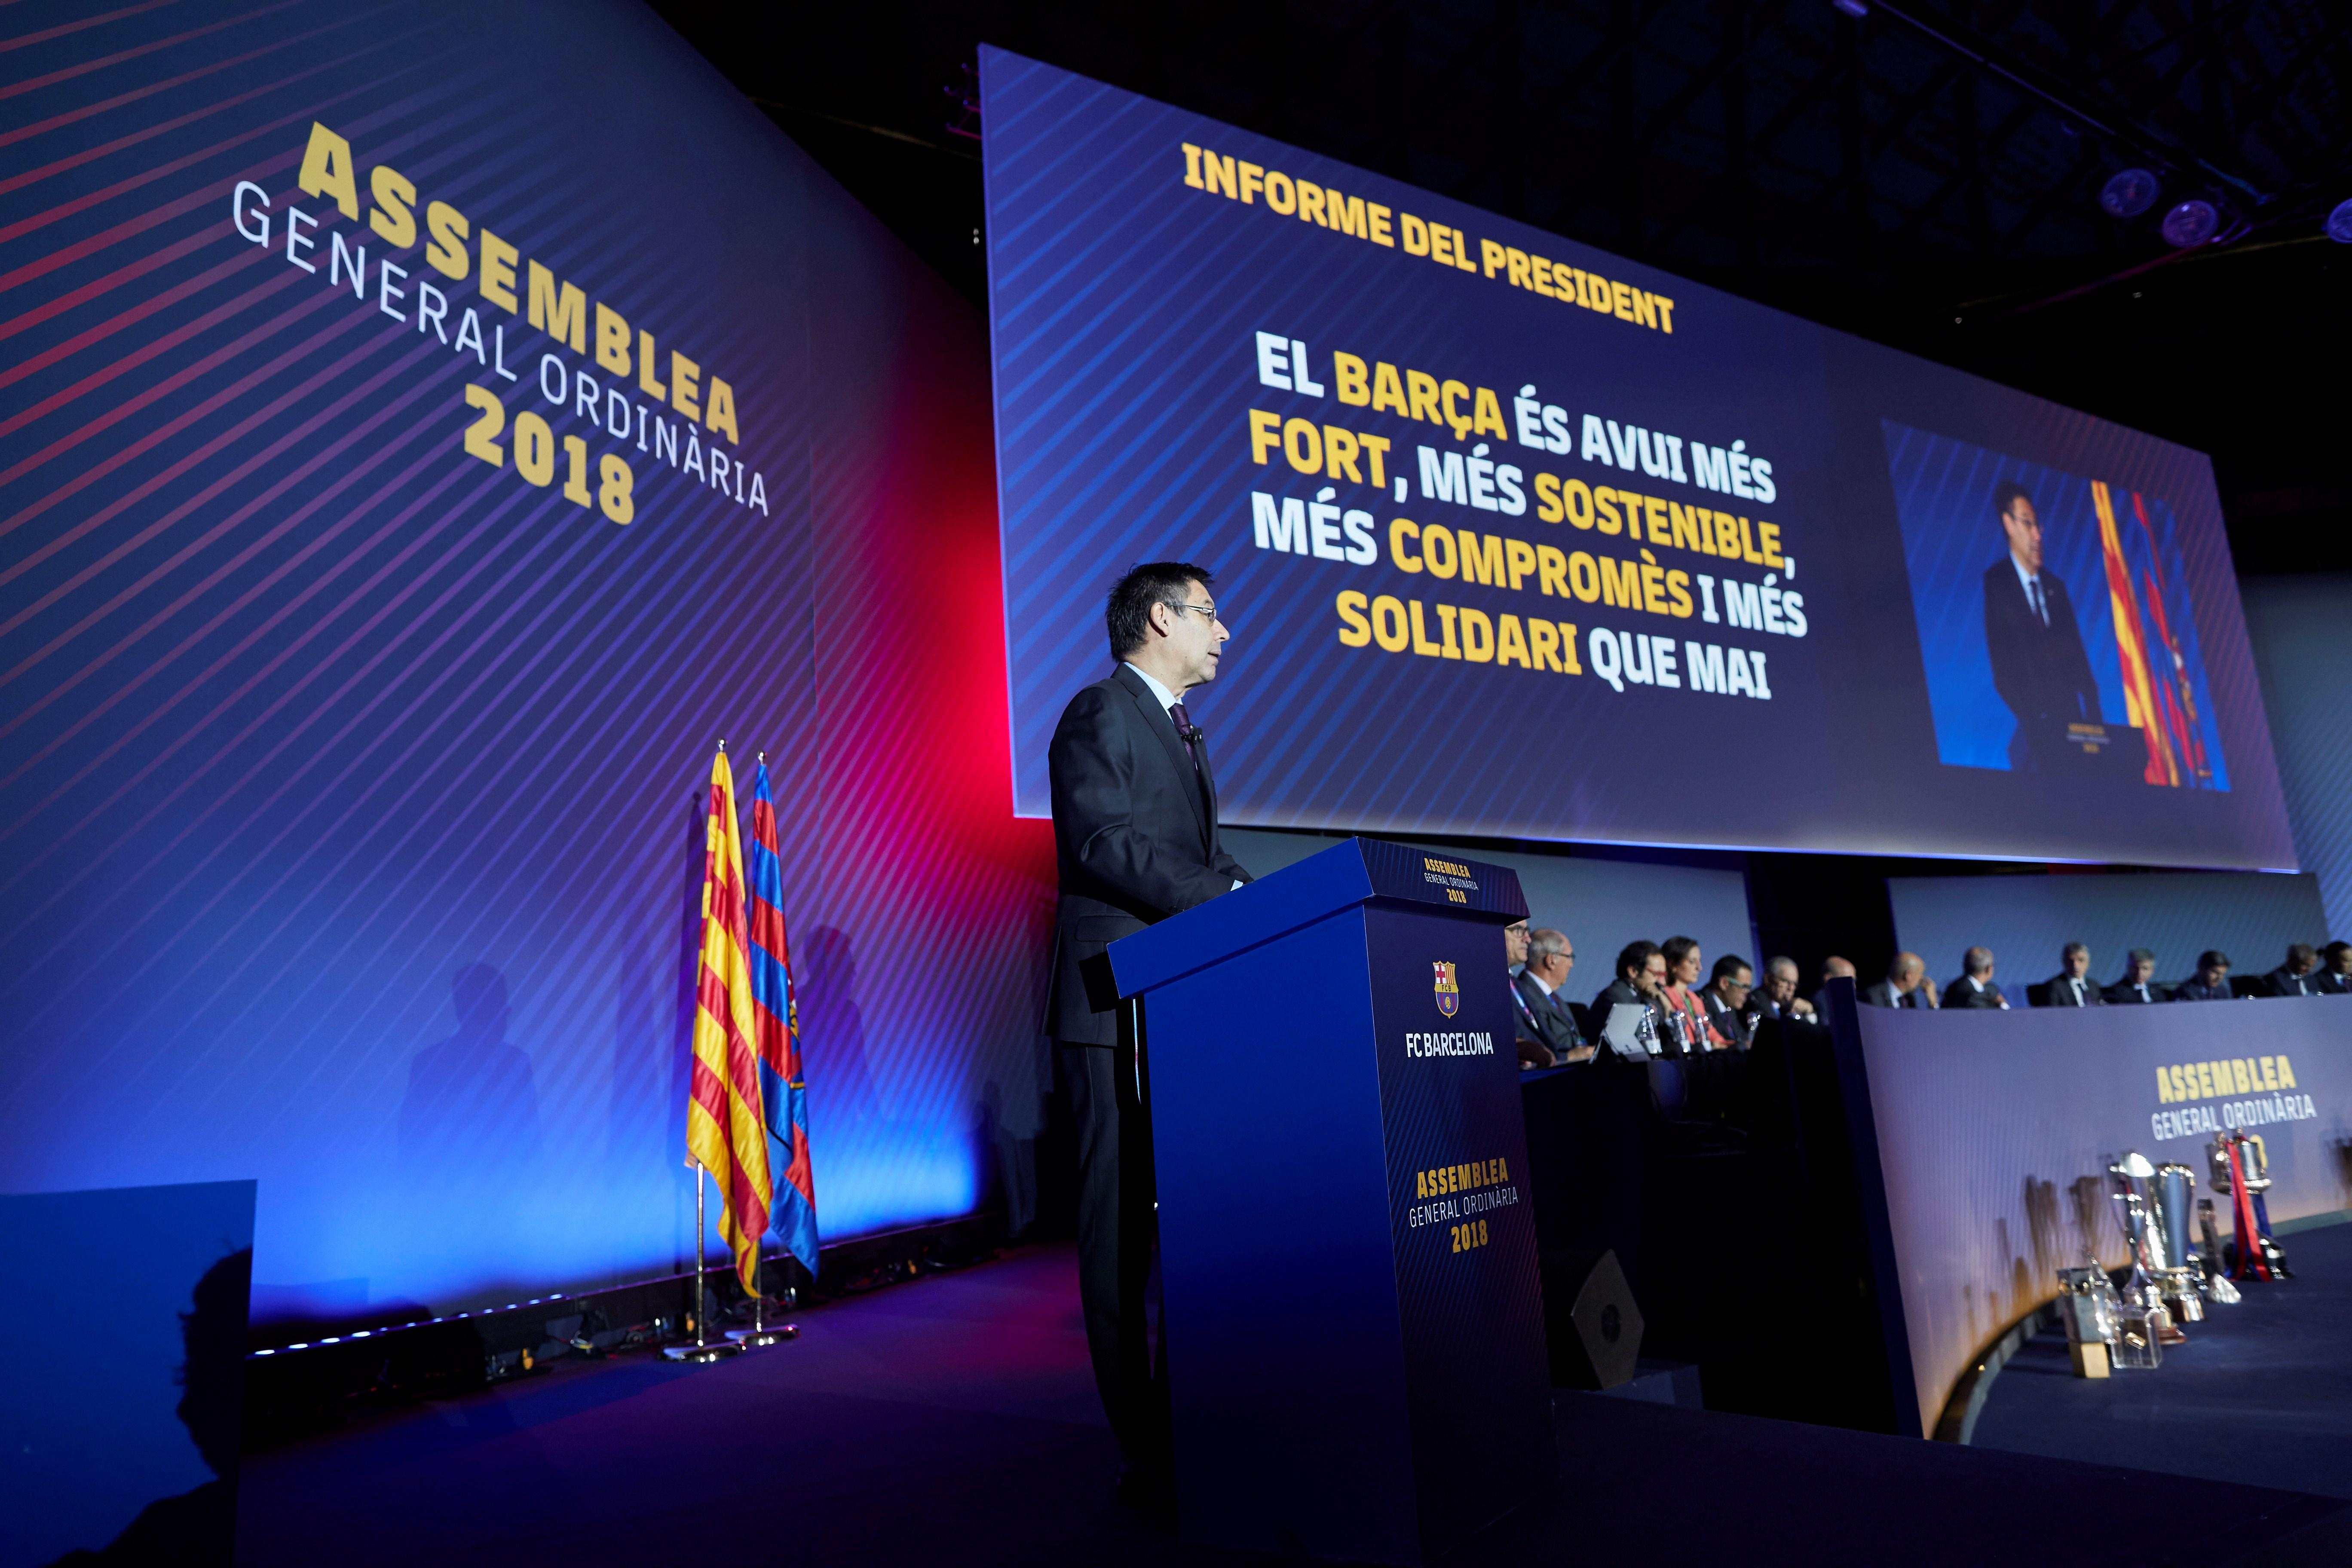 Bartomeu reitera la defensa del Barça a la libertad de expresión y al derecho a decidir